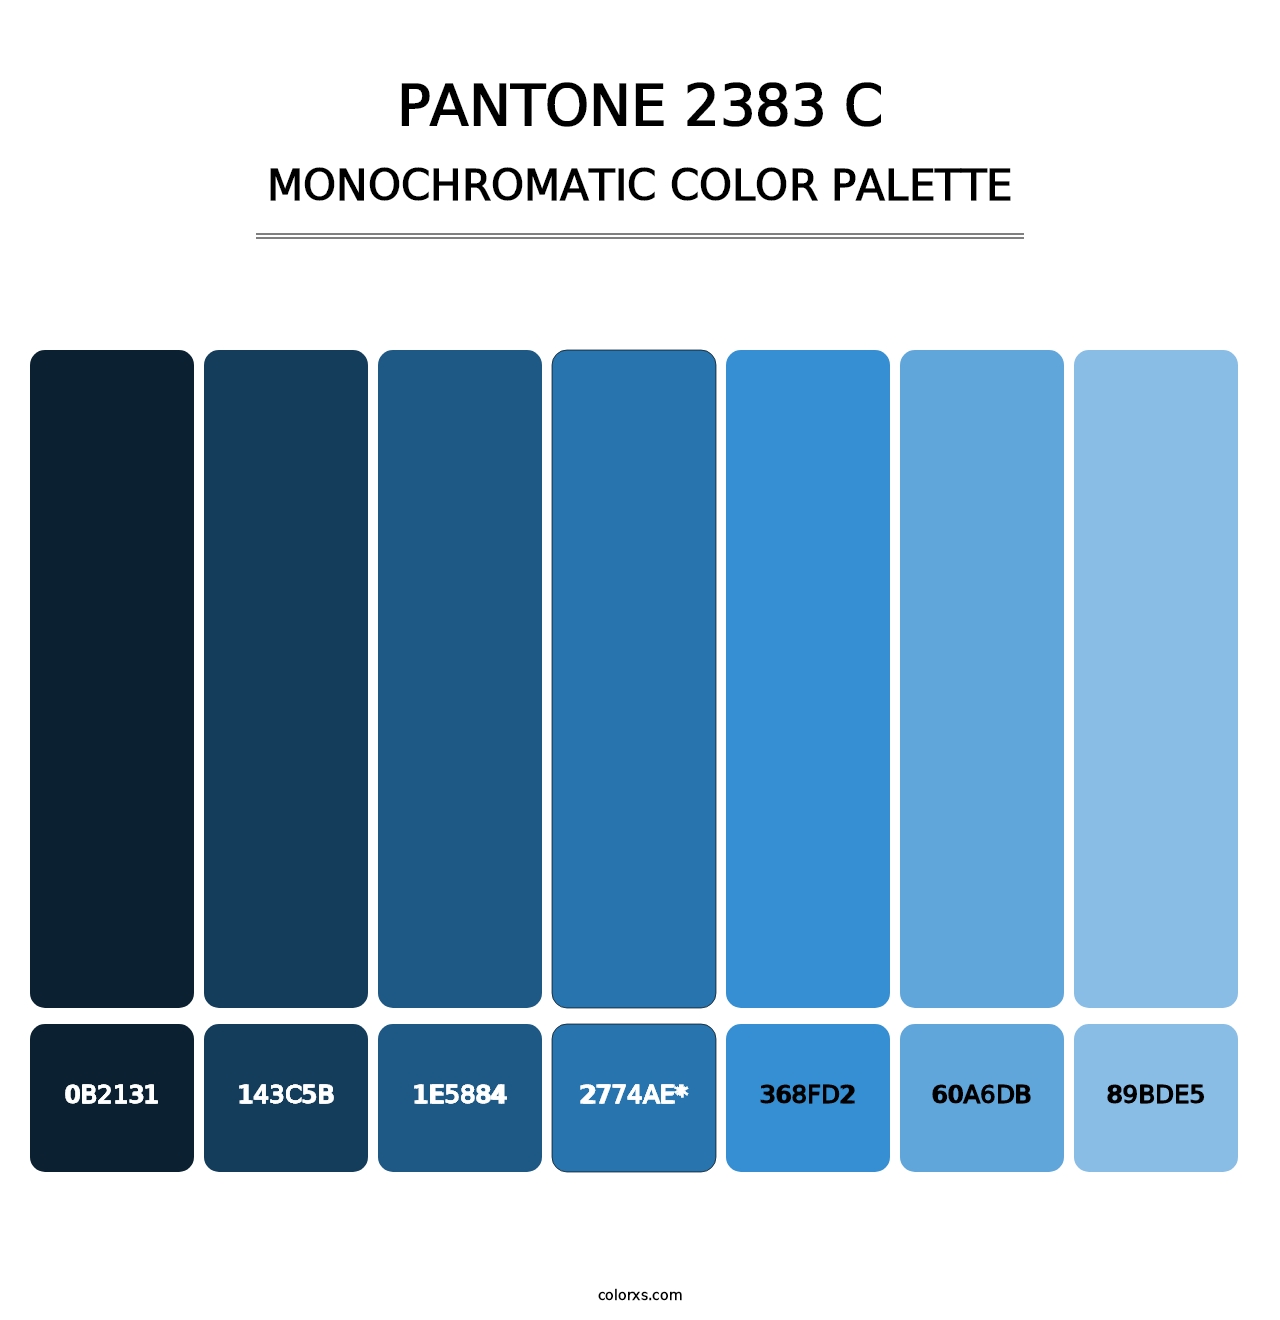 PANTONE 2383 C - Monochromatic Color Palette